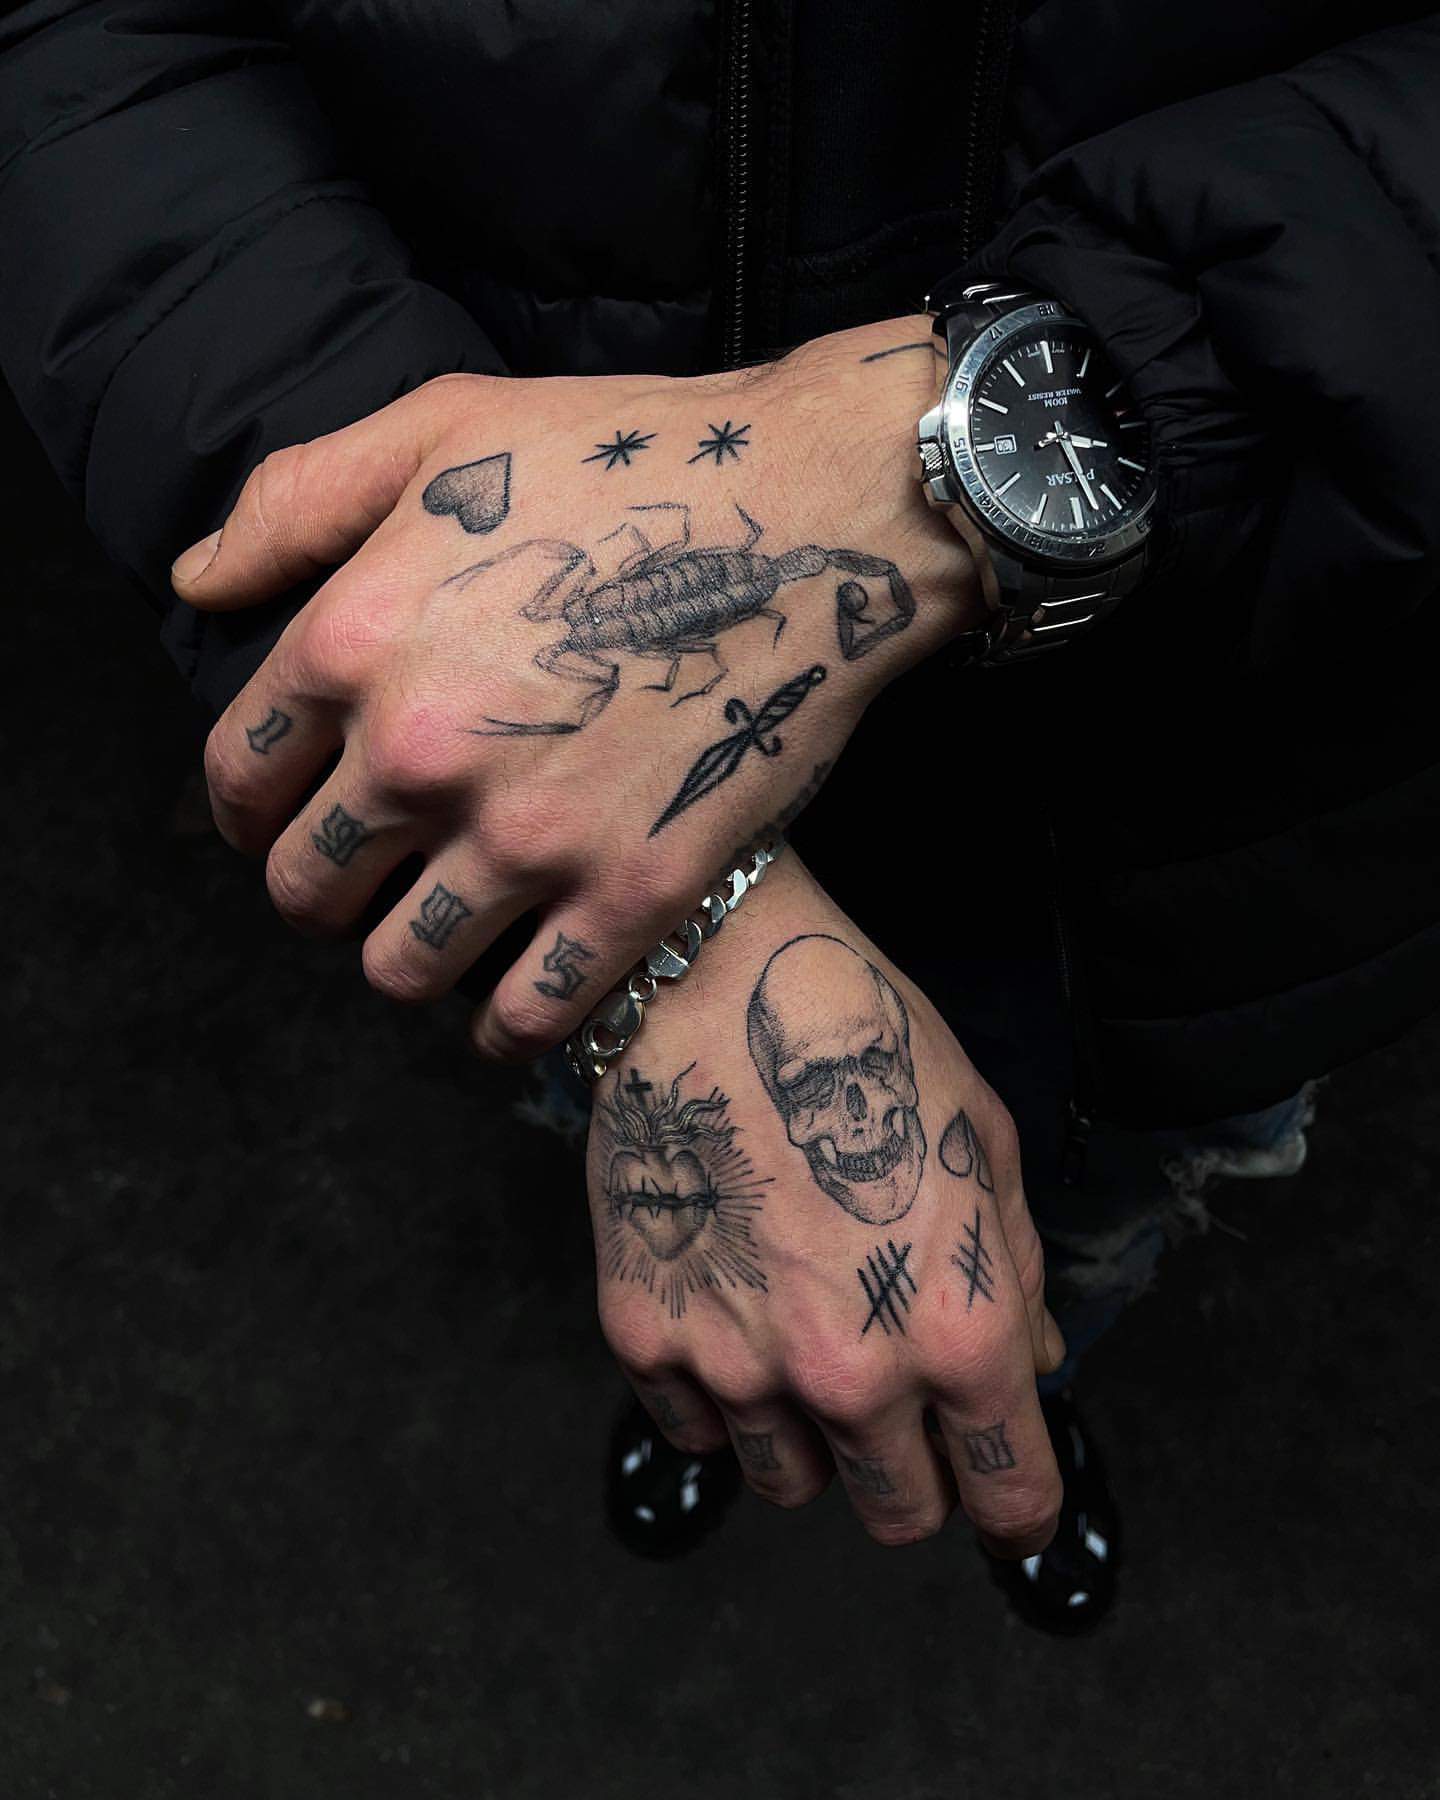 Permanent Men Wrist Rose Tattoo 5000 Rs 599square inch Inkblot Tattoo   Art Studio  ID 24473174288